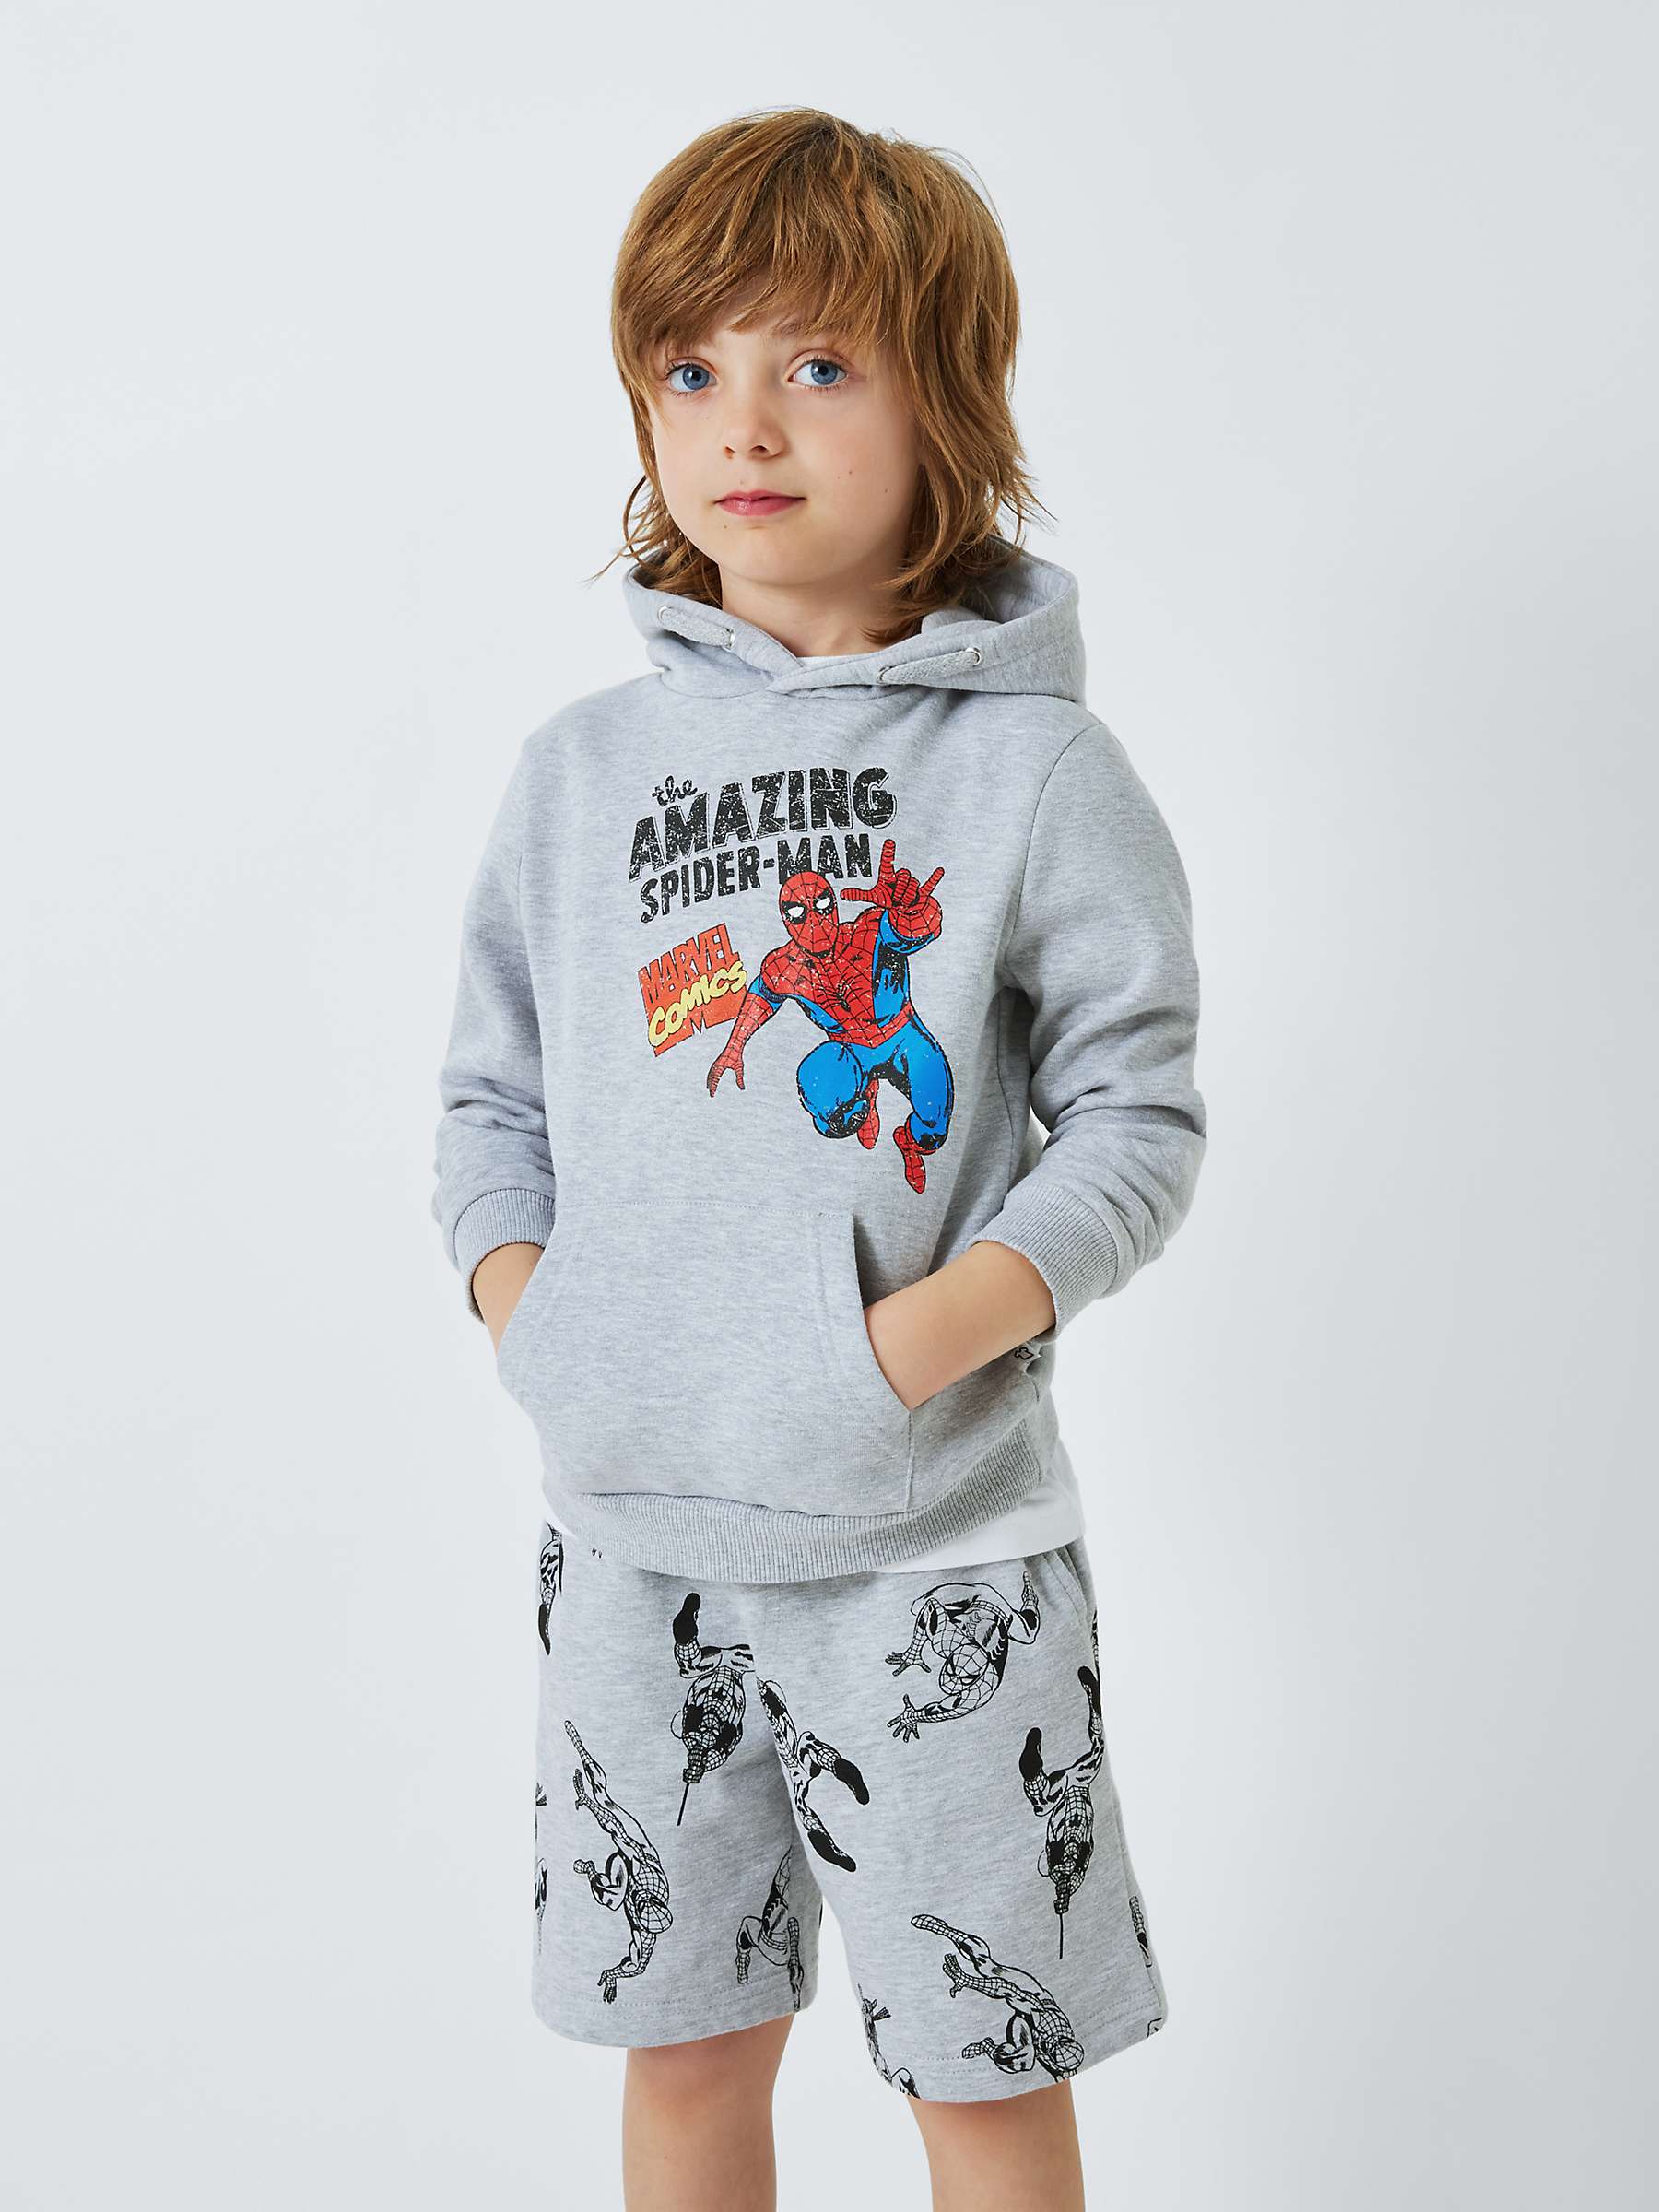 Buy Brand Threads Kids' Spider-Man Hoodie, Grey Online at johnlewis.com